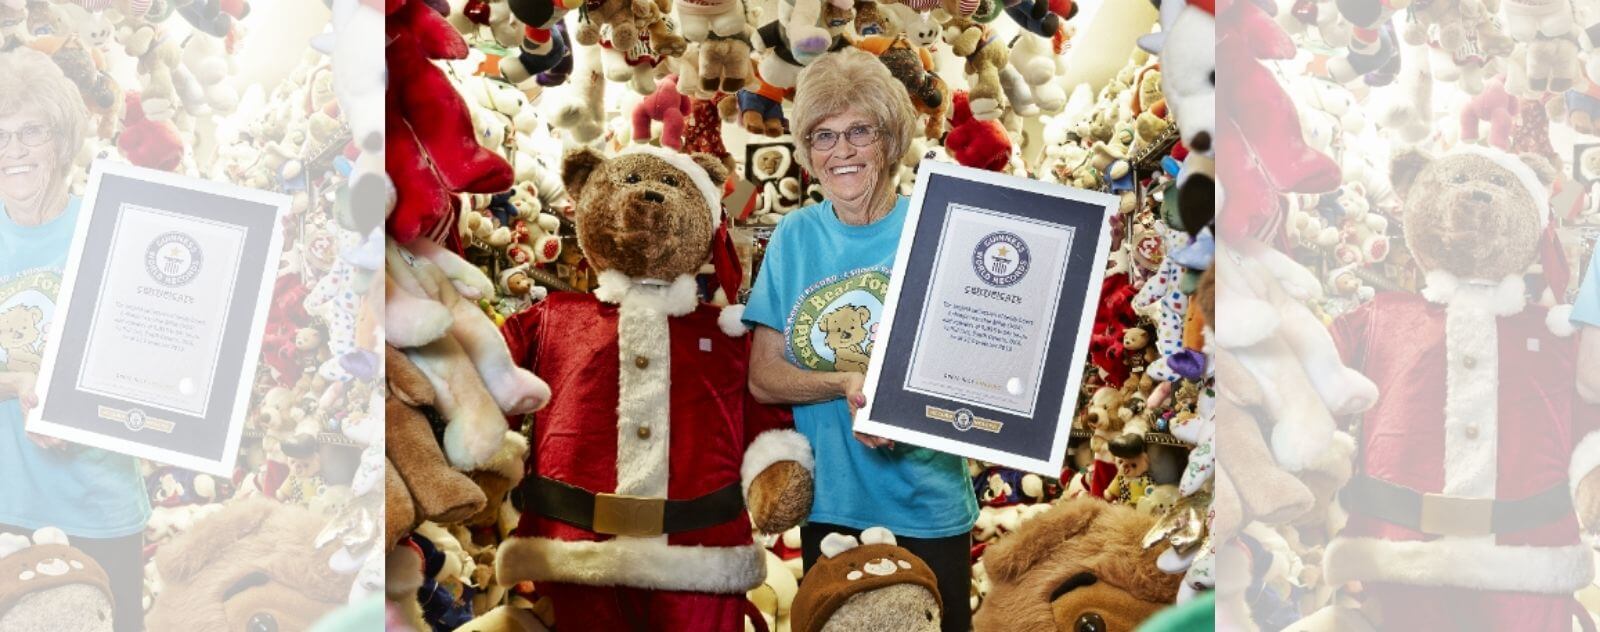 Le Record Officiel de la Plus Grande Collection de Peluche du Guinness World Record 2018